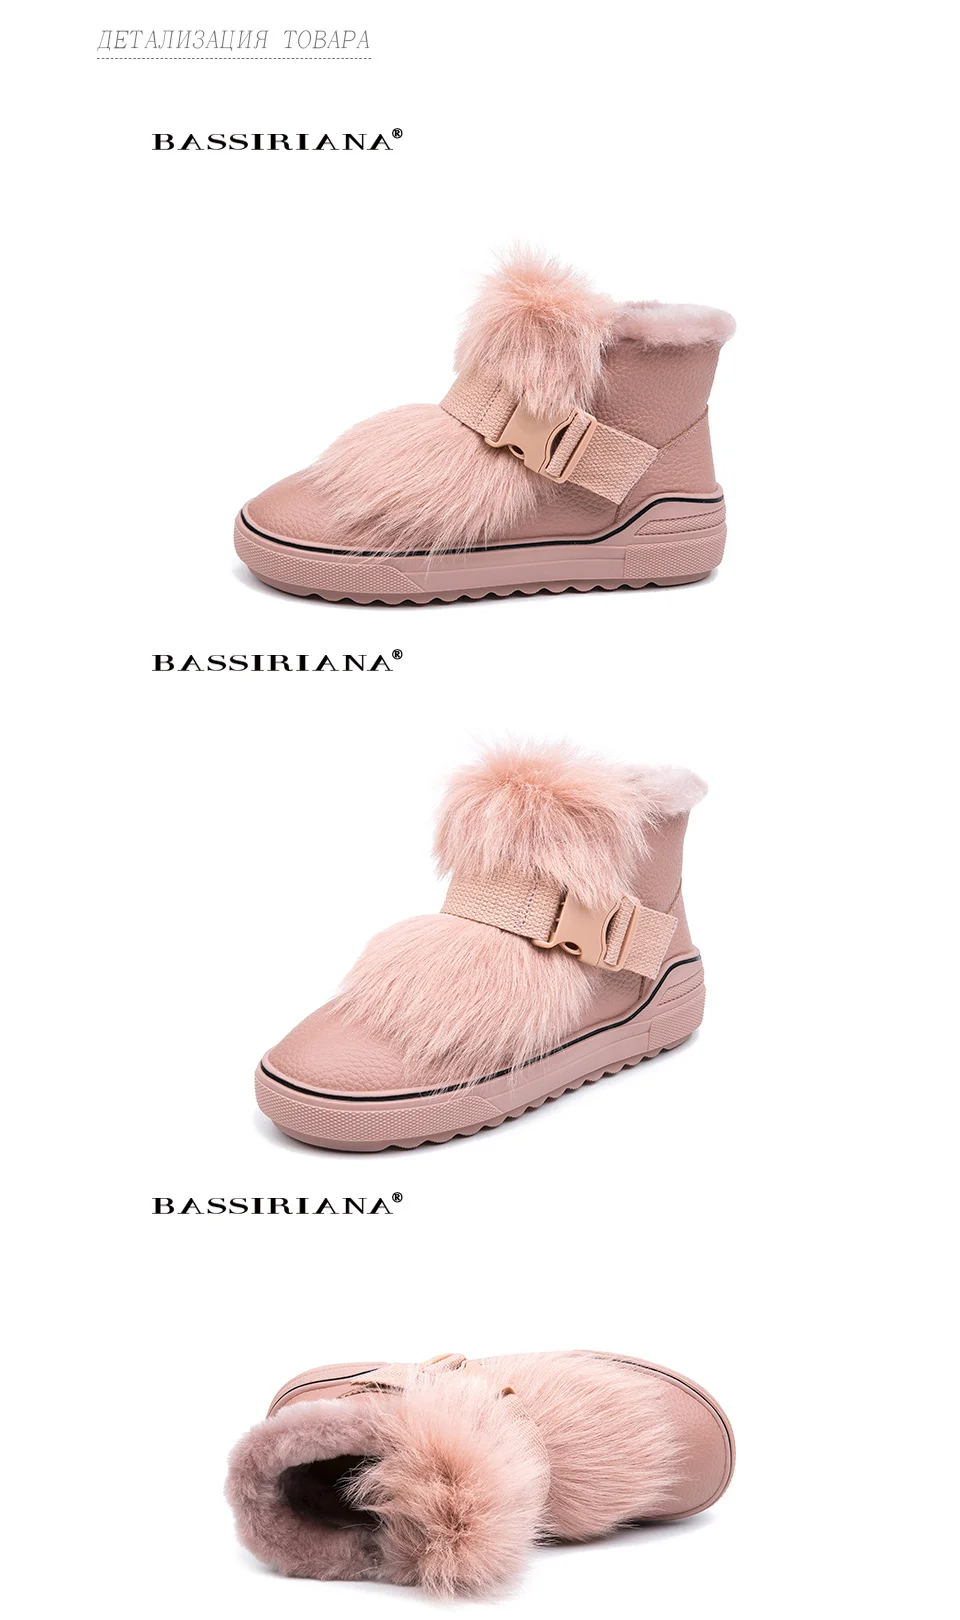 BASSIRIANA/ г. новые зимние женские теплые боты обувь женская плюшевая модная обувь с хлопковой подкладкой Белый Розовый Черный Цвет